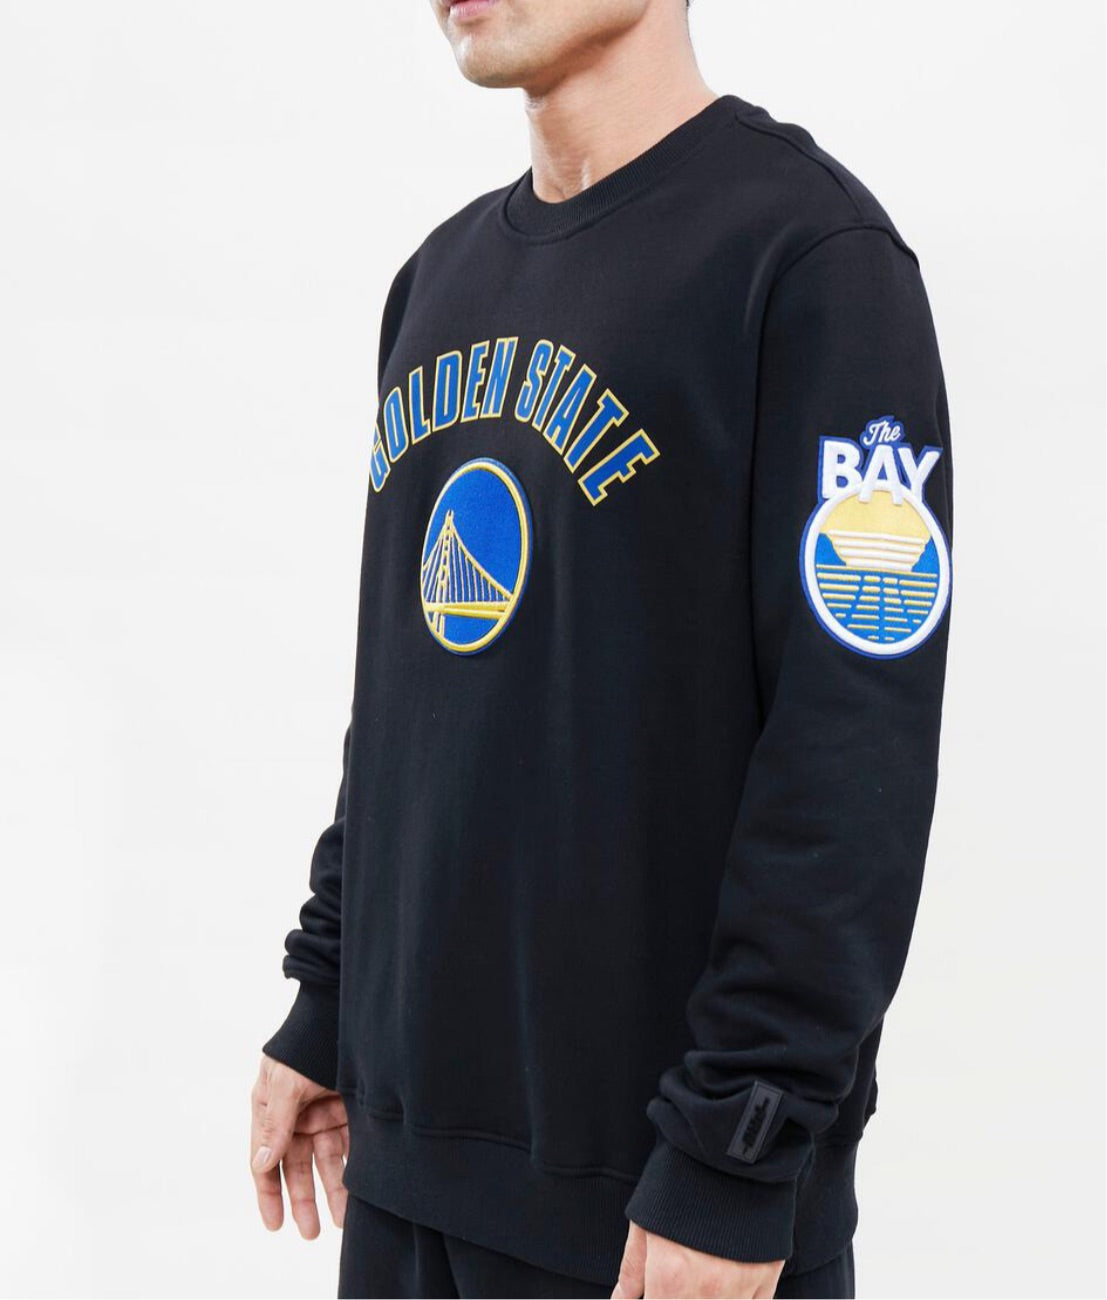 Pro Standard Golden State Warriors Crew Sweatshirt